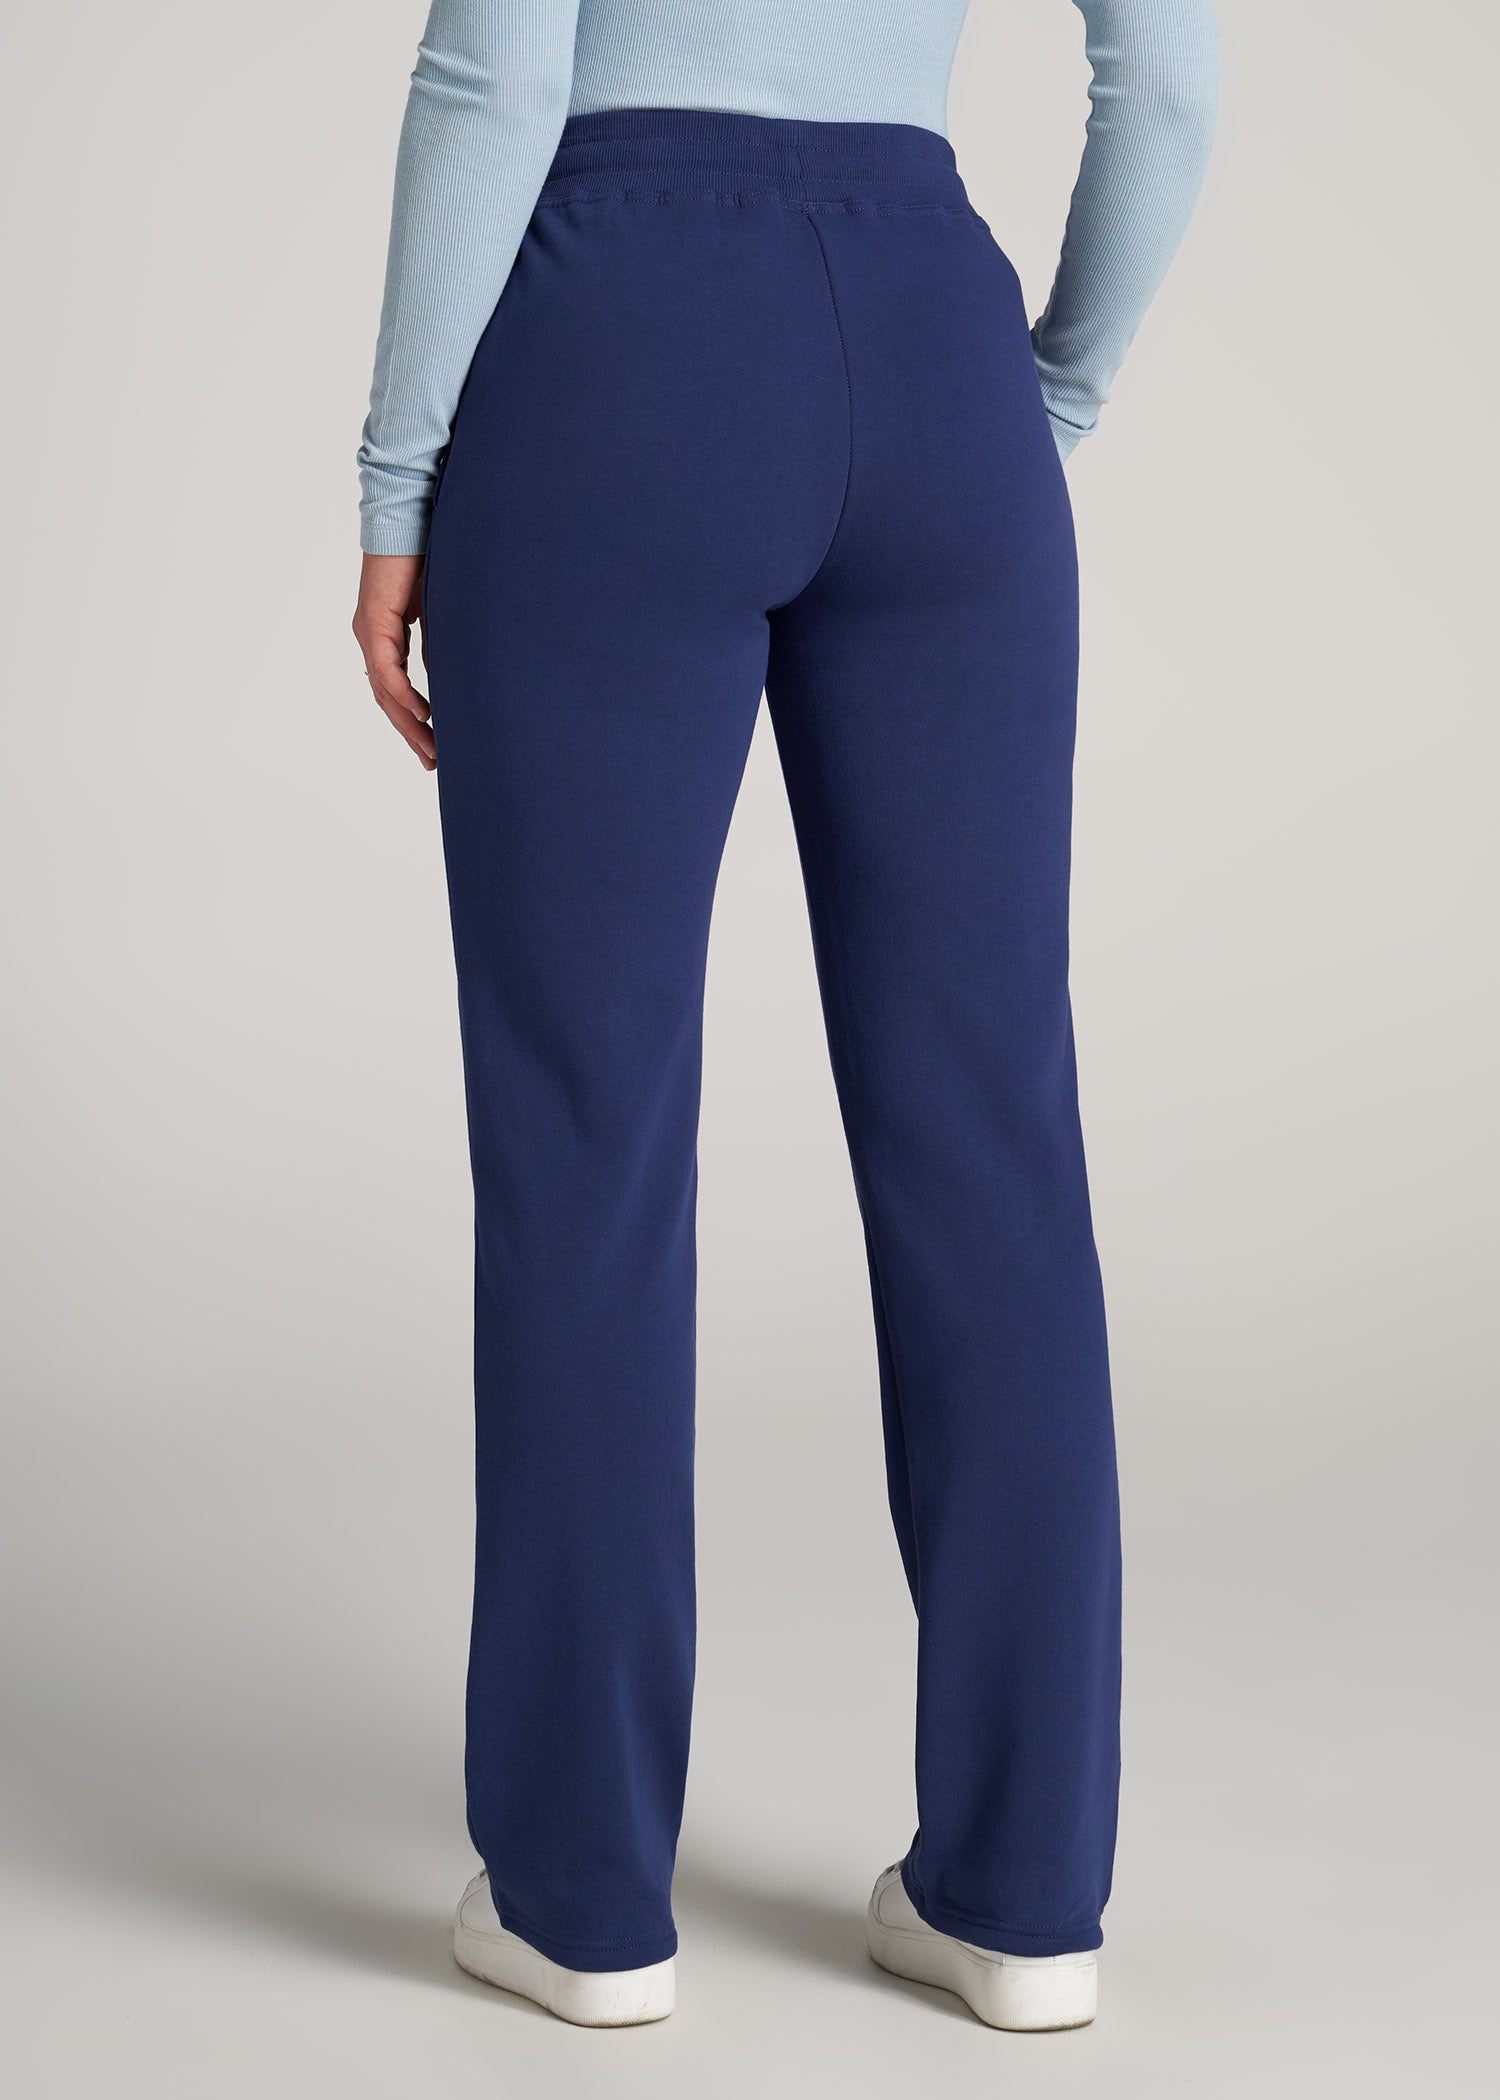 Wearever Fleece Open-Bottom Sweatpants for Tall Women Midnight Blue ...